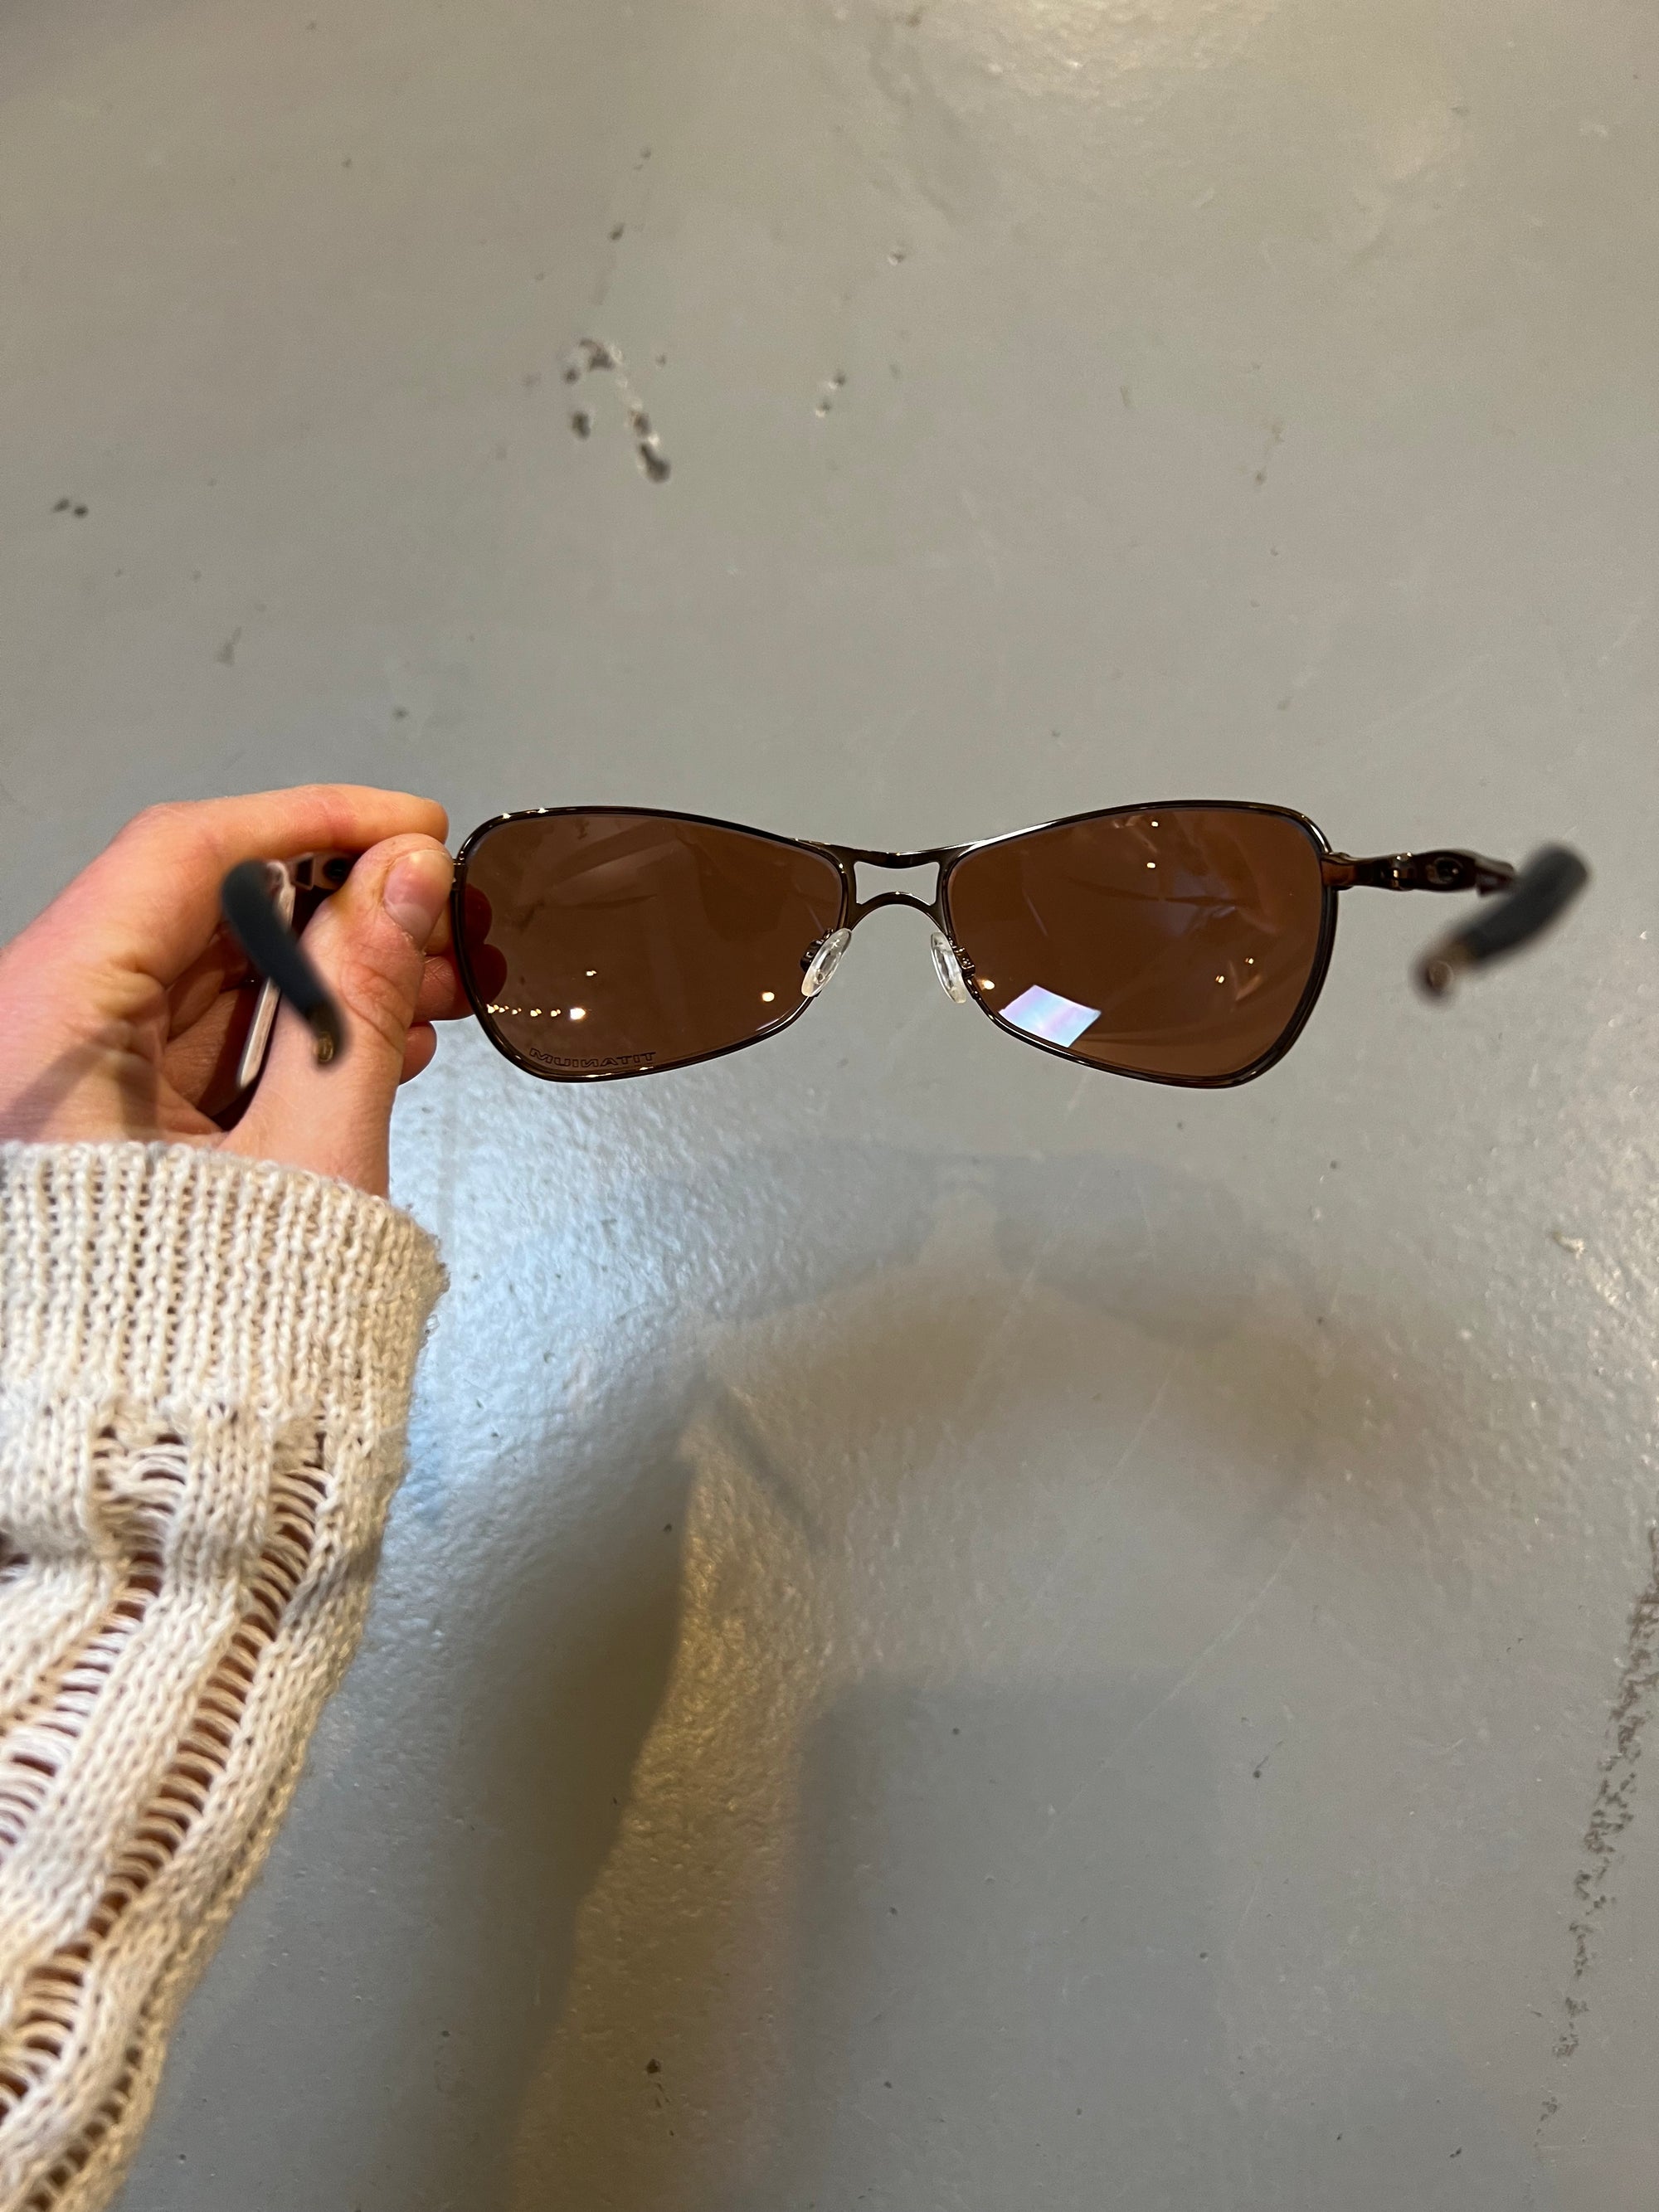 Produktbild von Oakley Titanium Sunglasses von hinten mit offenen Gestell 